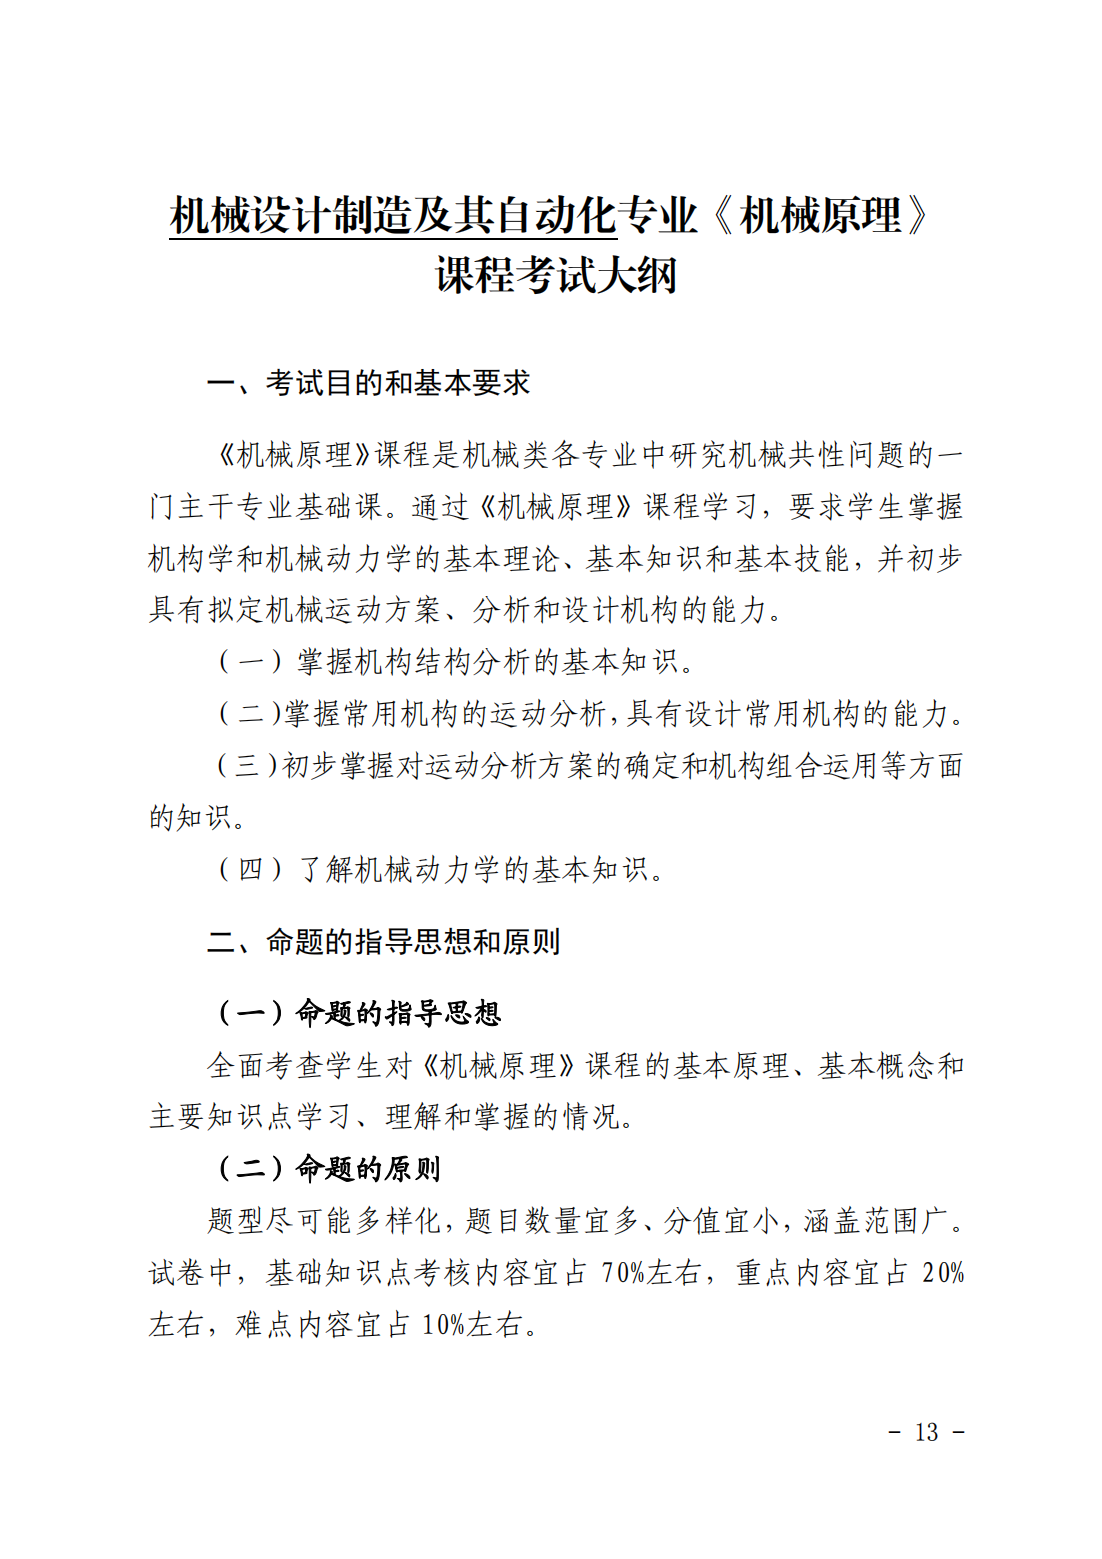 湖南科技大学潇湘学院2023年“专升本”招生章程